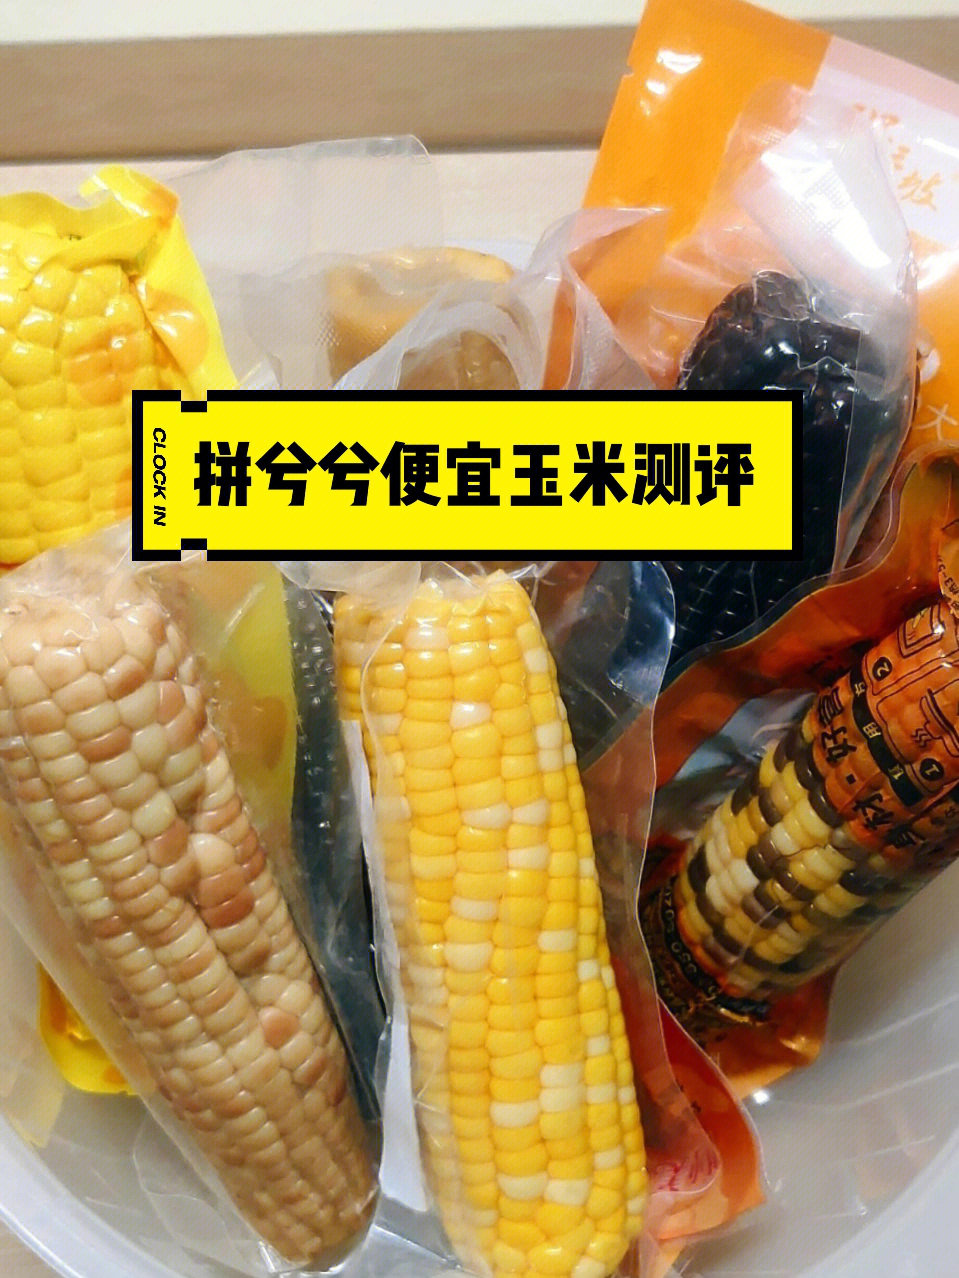 河南现代959玉米种图片